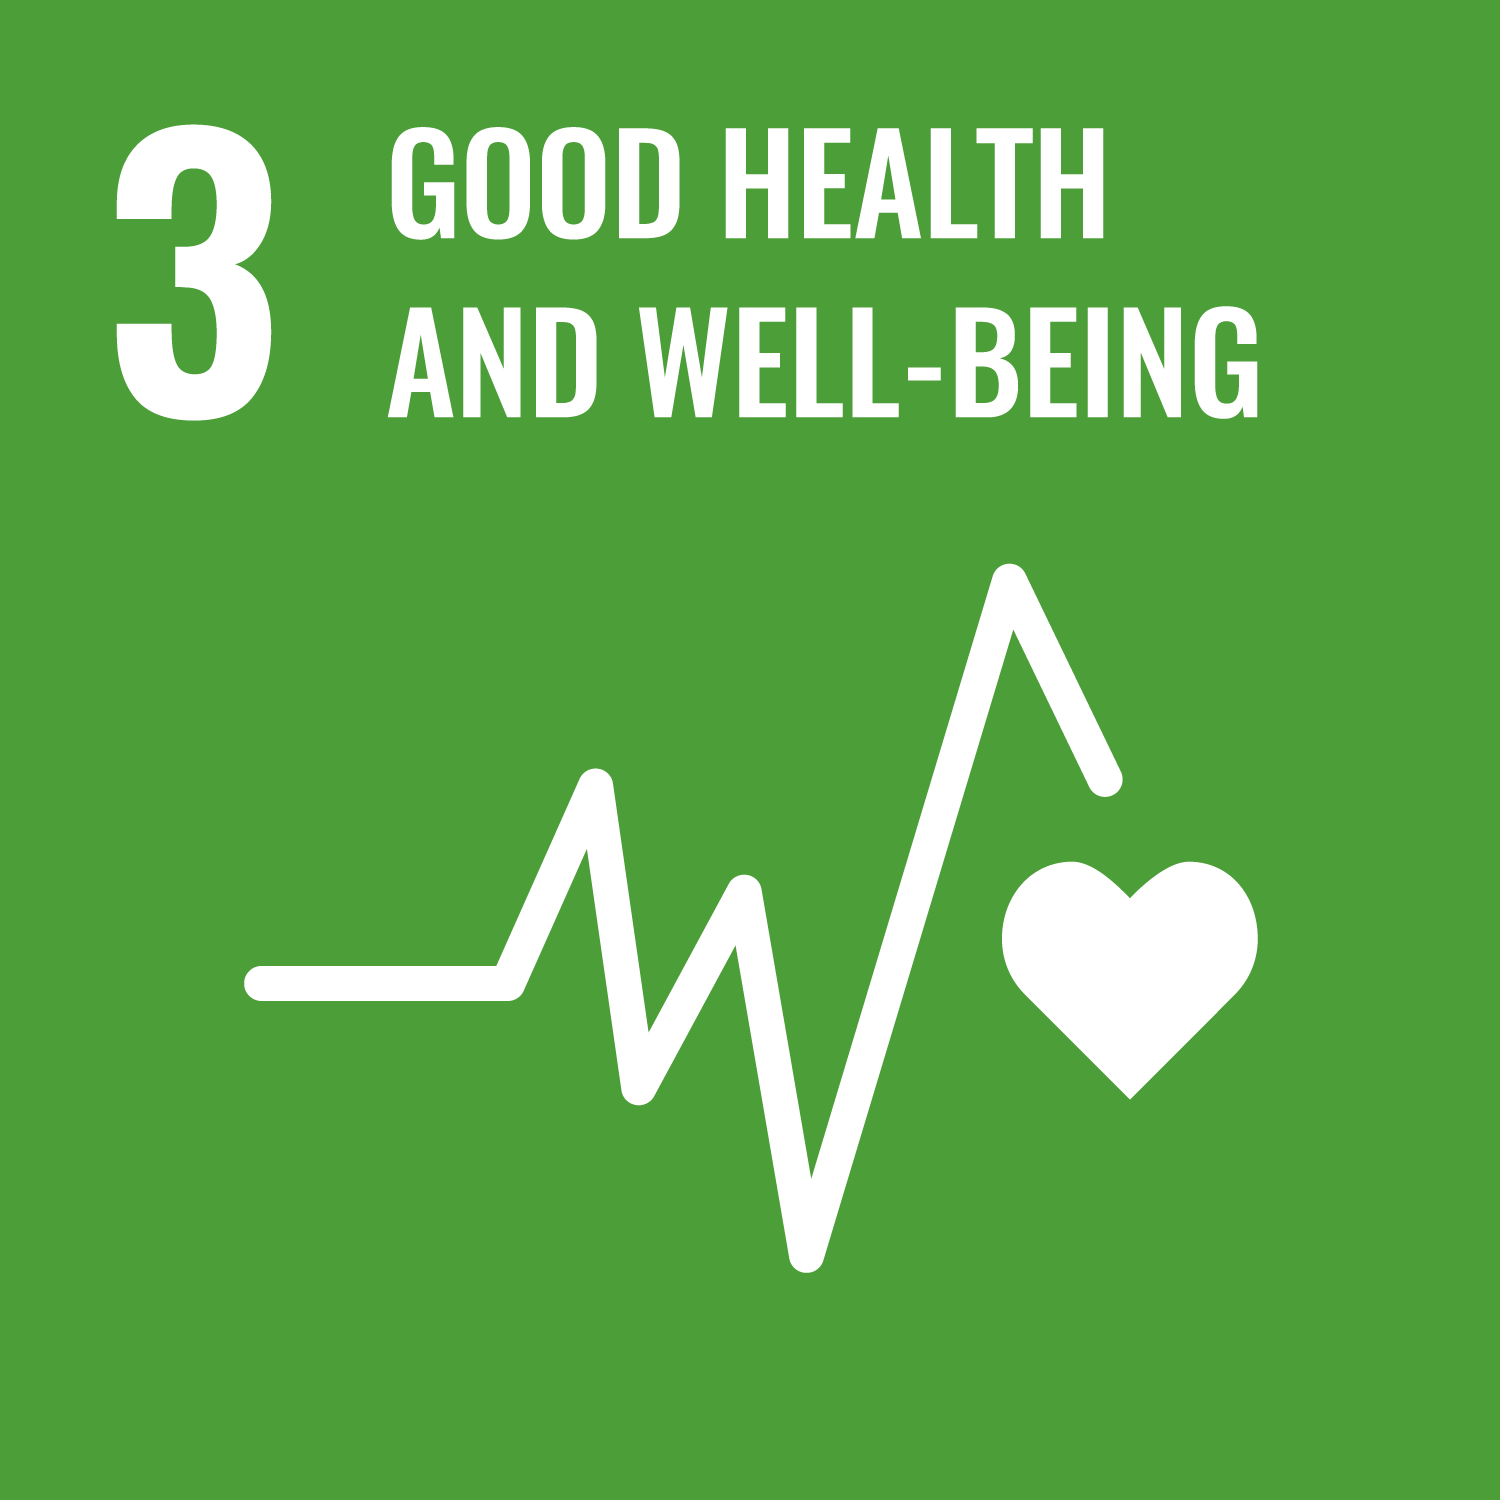 SDGs goals No.3